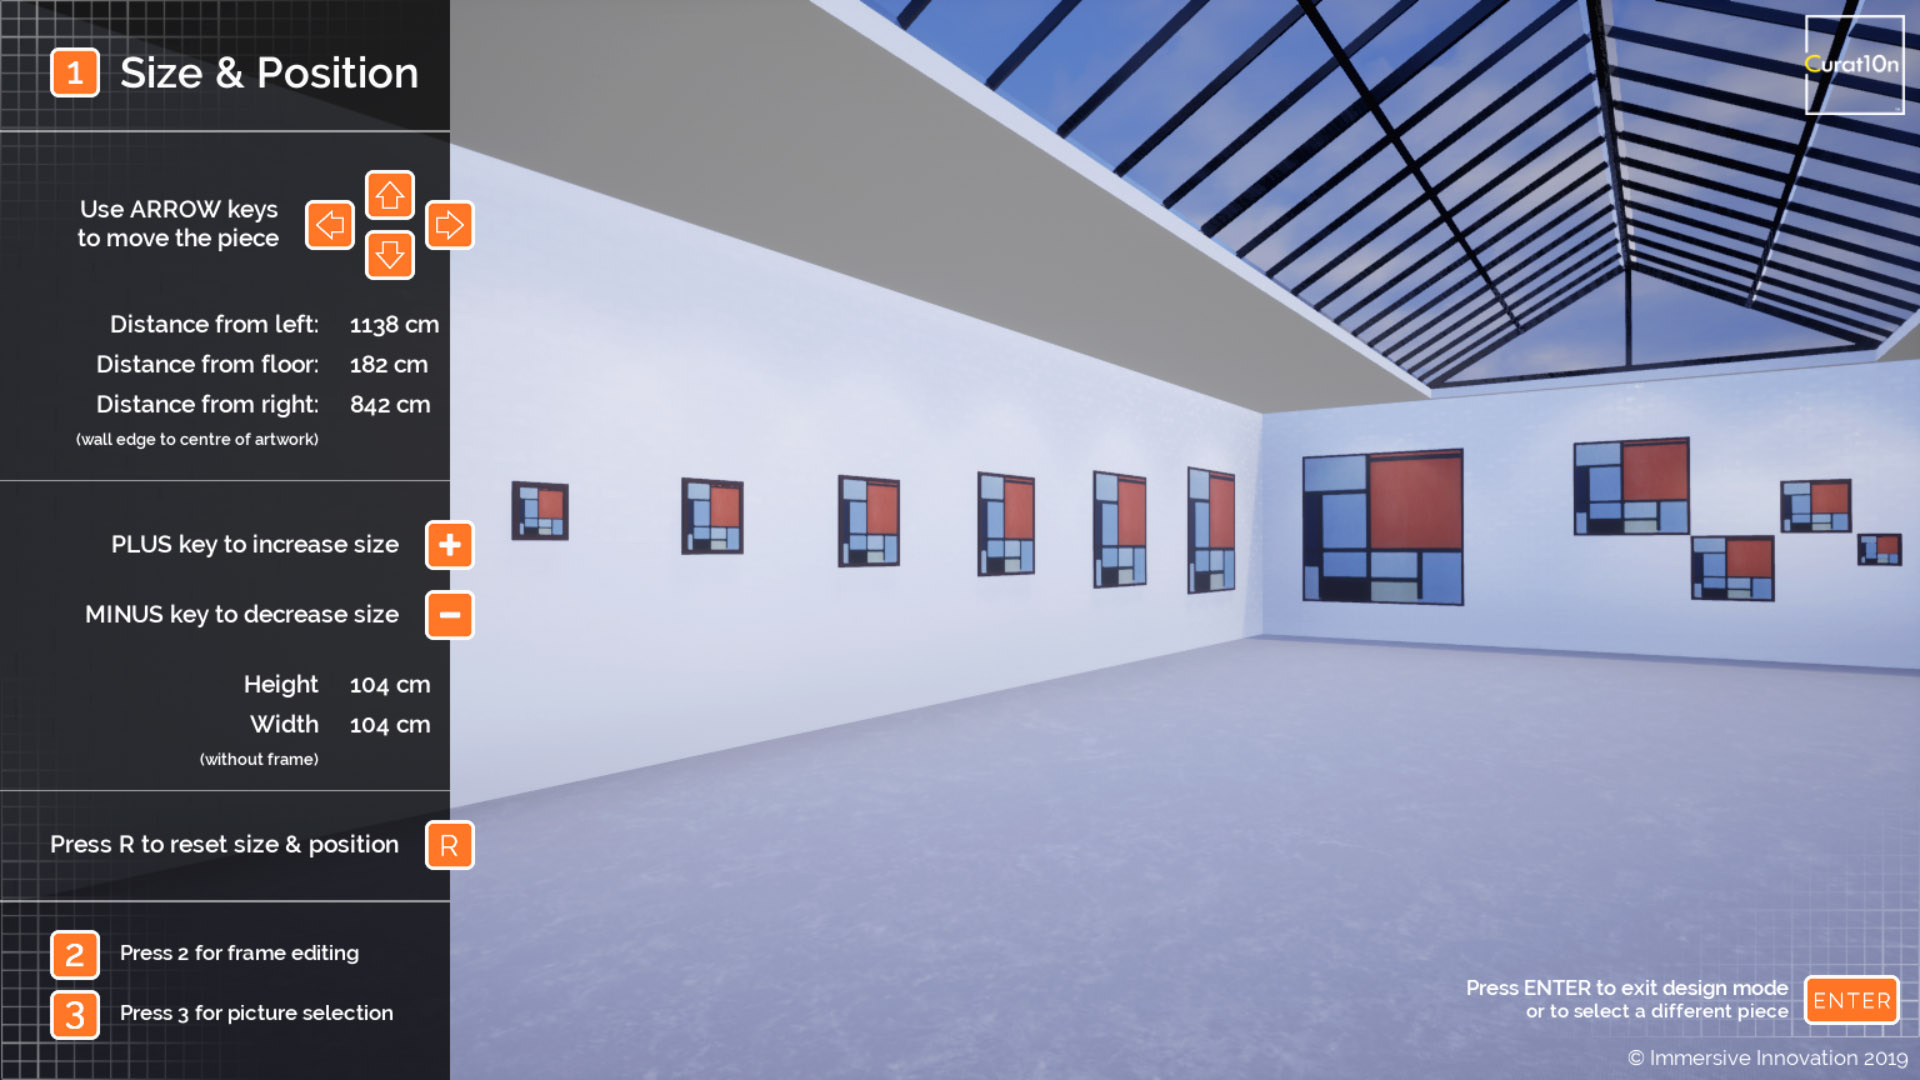 Exhibition Editor - Design & Plan - Virtual Gallery - Curat10n